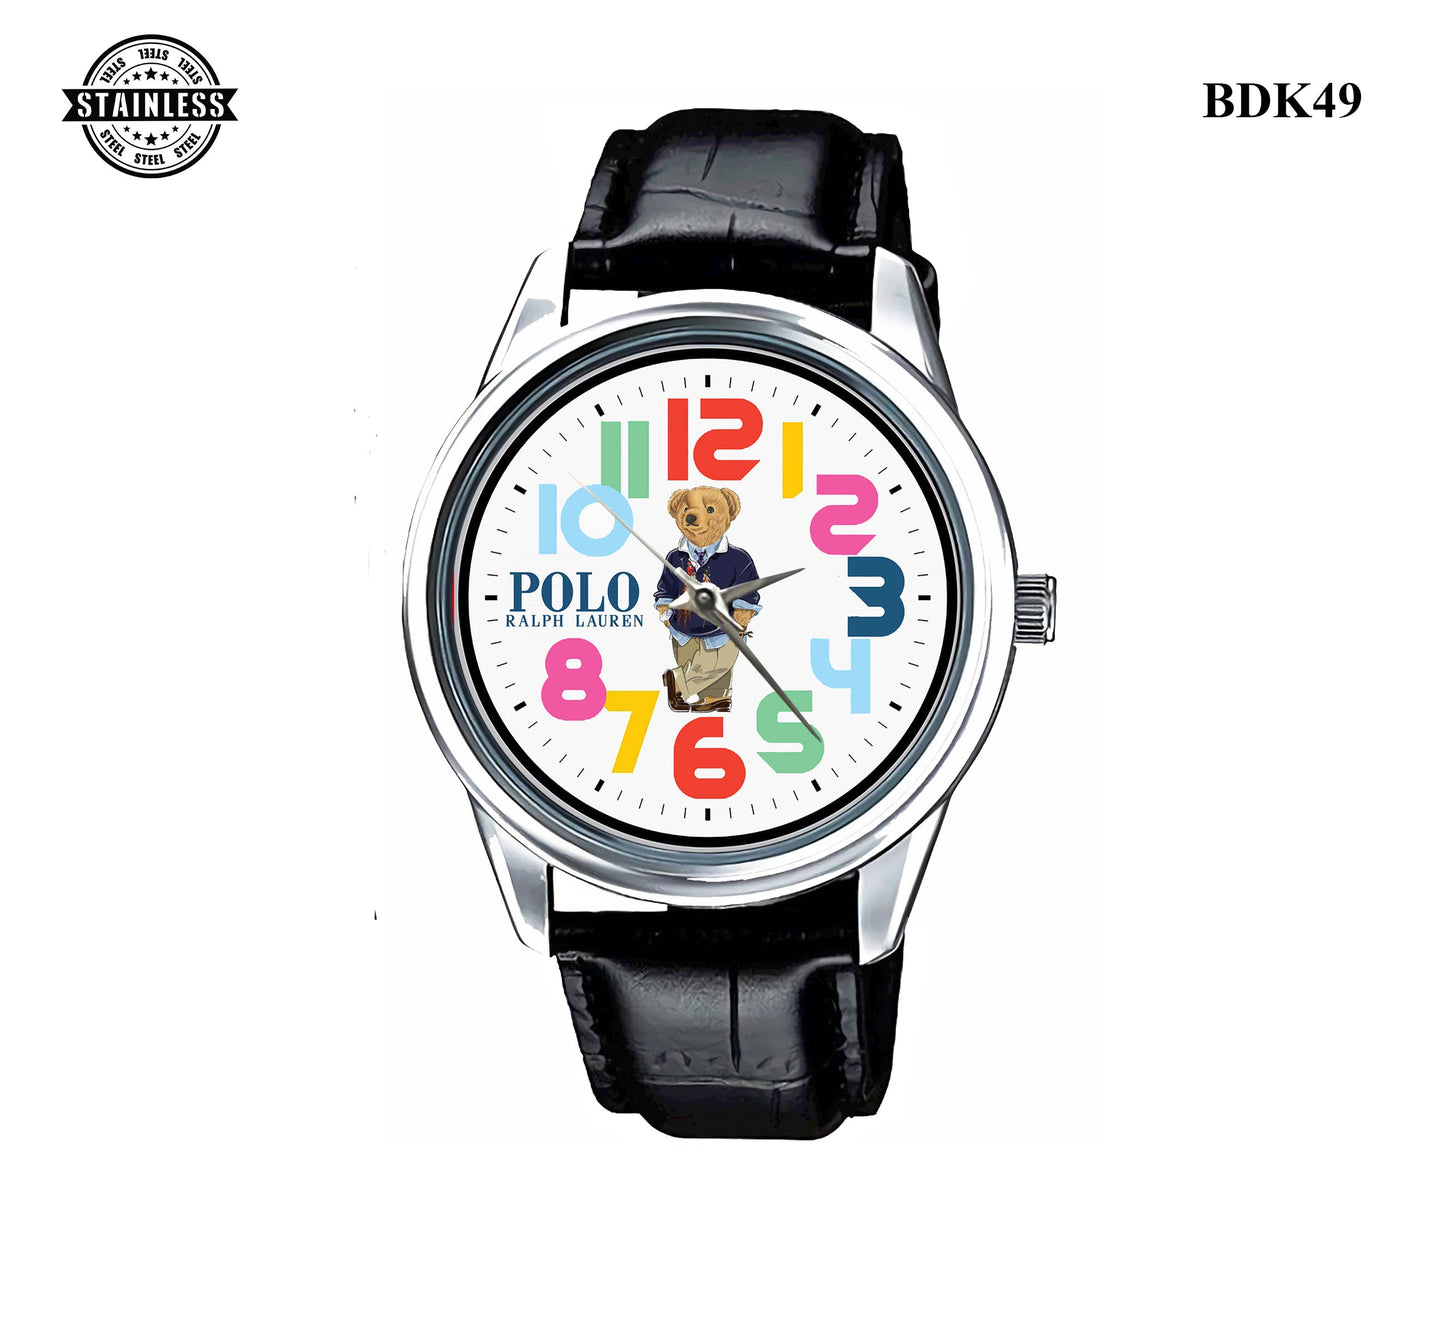 Polo Ralph Lauren Bear Sport Metal Watch Bdk49-1